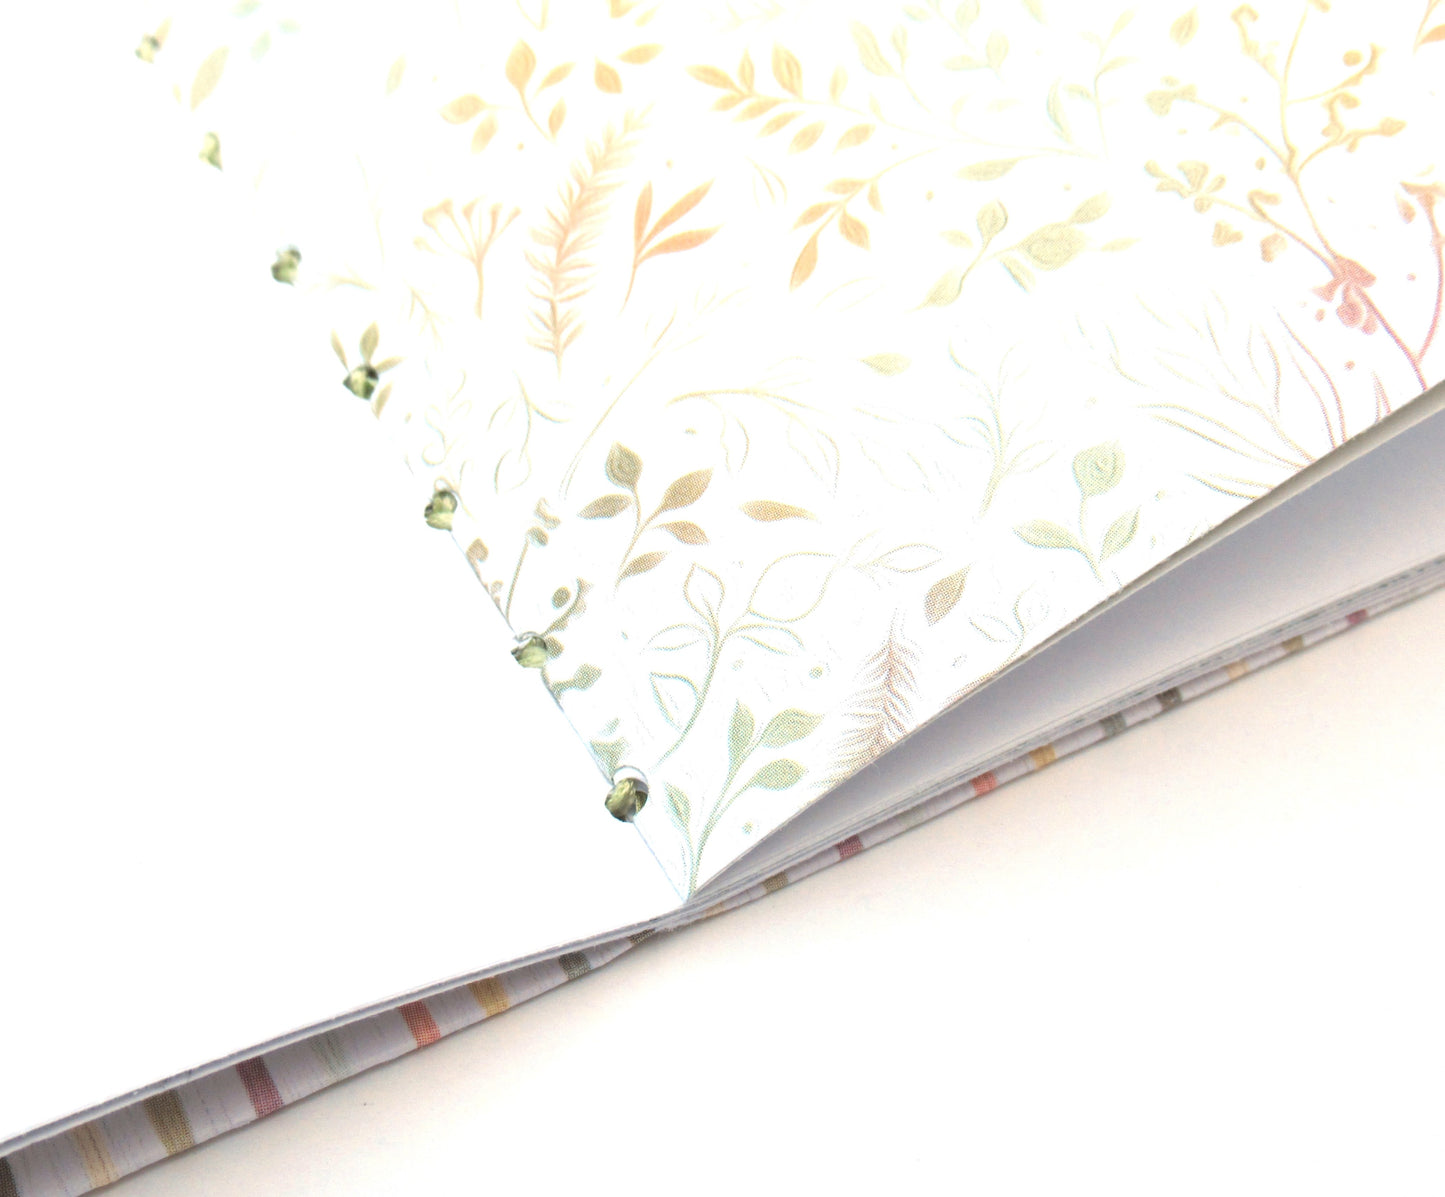 Journal - Handmade JOURNAL - Soft Cover Journal - Handbound Blank Notebook - Gratitude Journal - Striped Motif Journal - Stationery - Literacy Project - 103